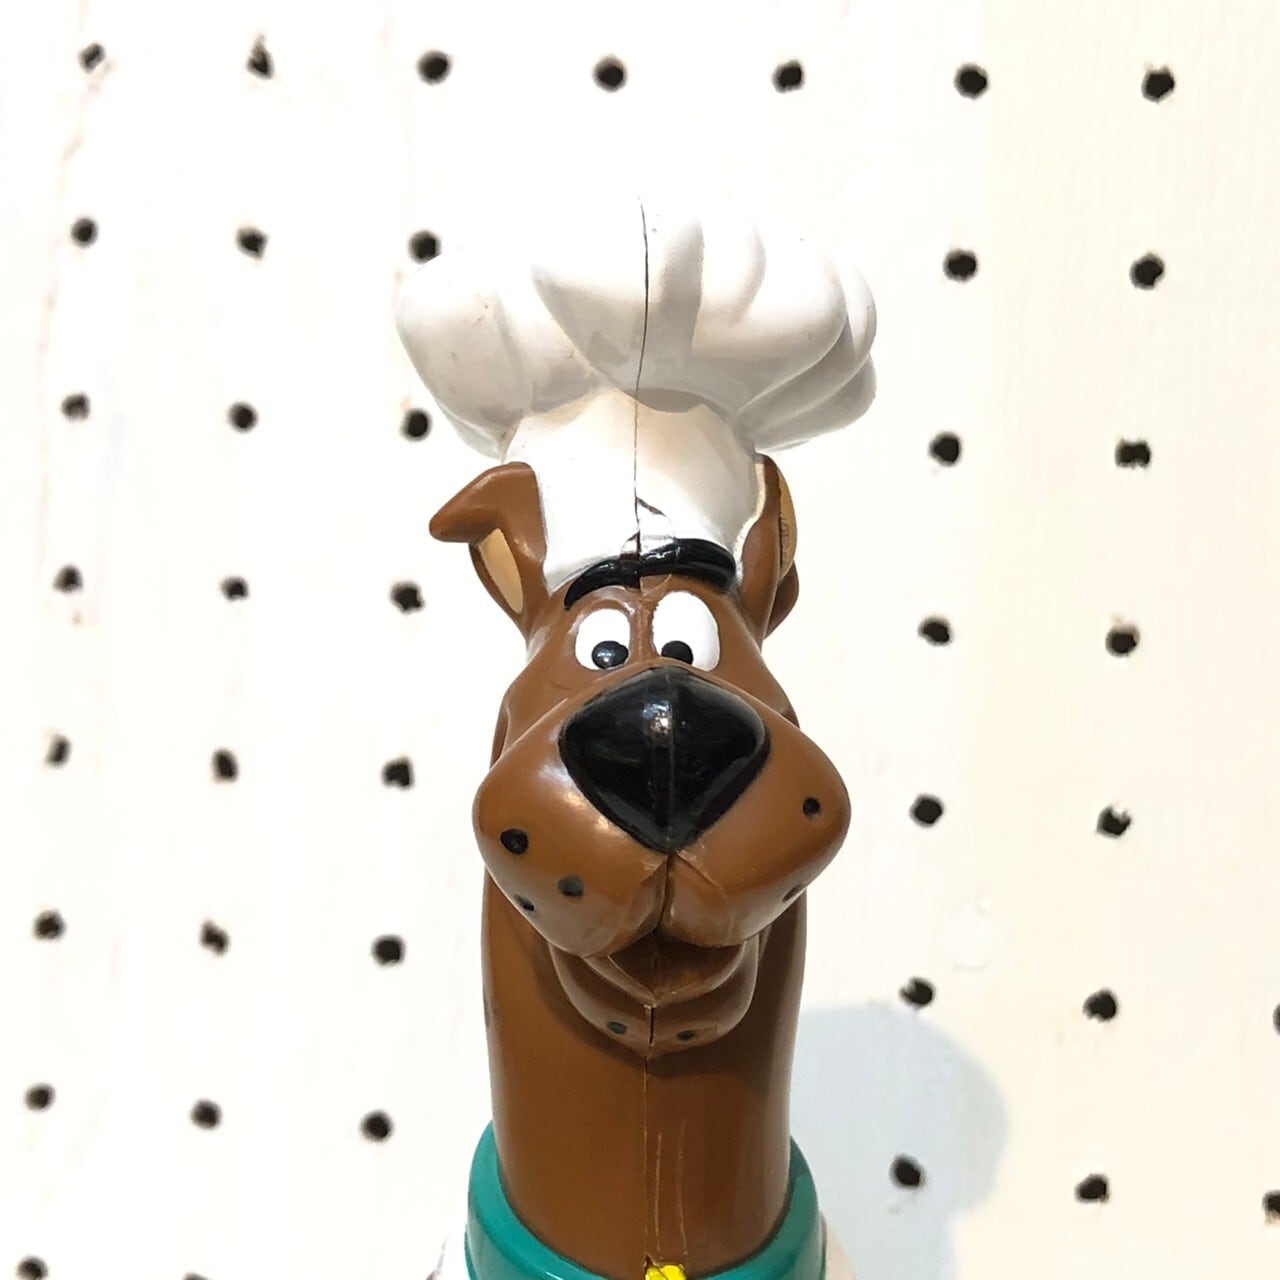 00s スクービードゥークレイジーシェフ ジャンピングフィギュア Hanna-Barbera Scooby-Doo Crazy jump Chef  THE PUPPEZ☆e-shop ザ パペッツ松本-WEBショップ